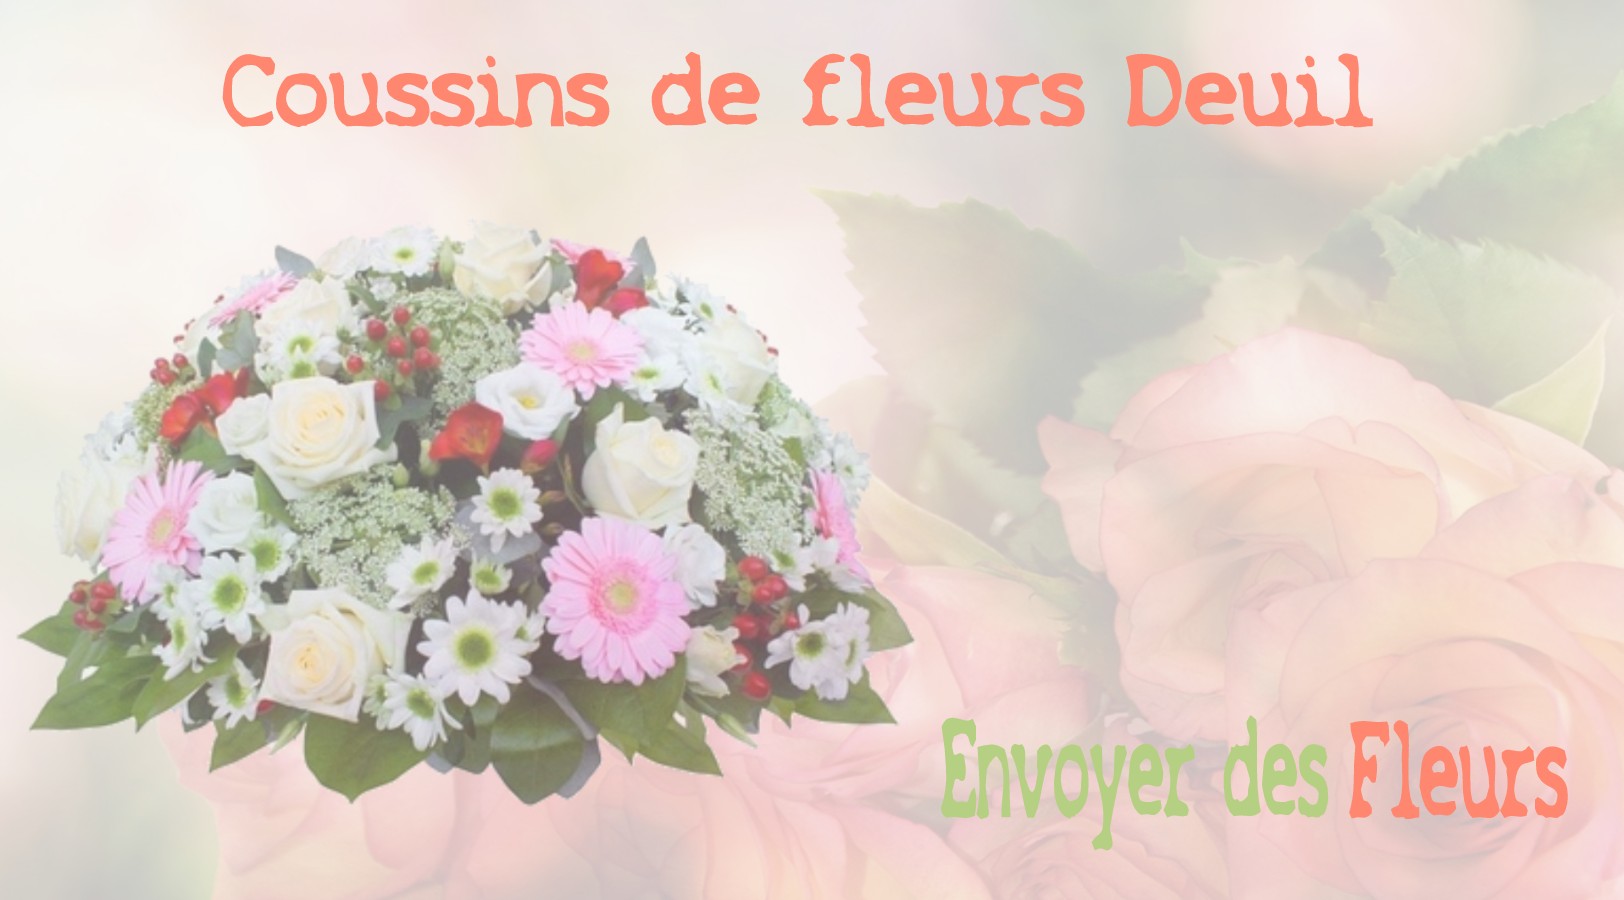 Les coussins de fleurs deuil - LIVRAISON FLEURS DEUIL A NANTERRE 92